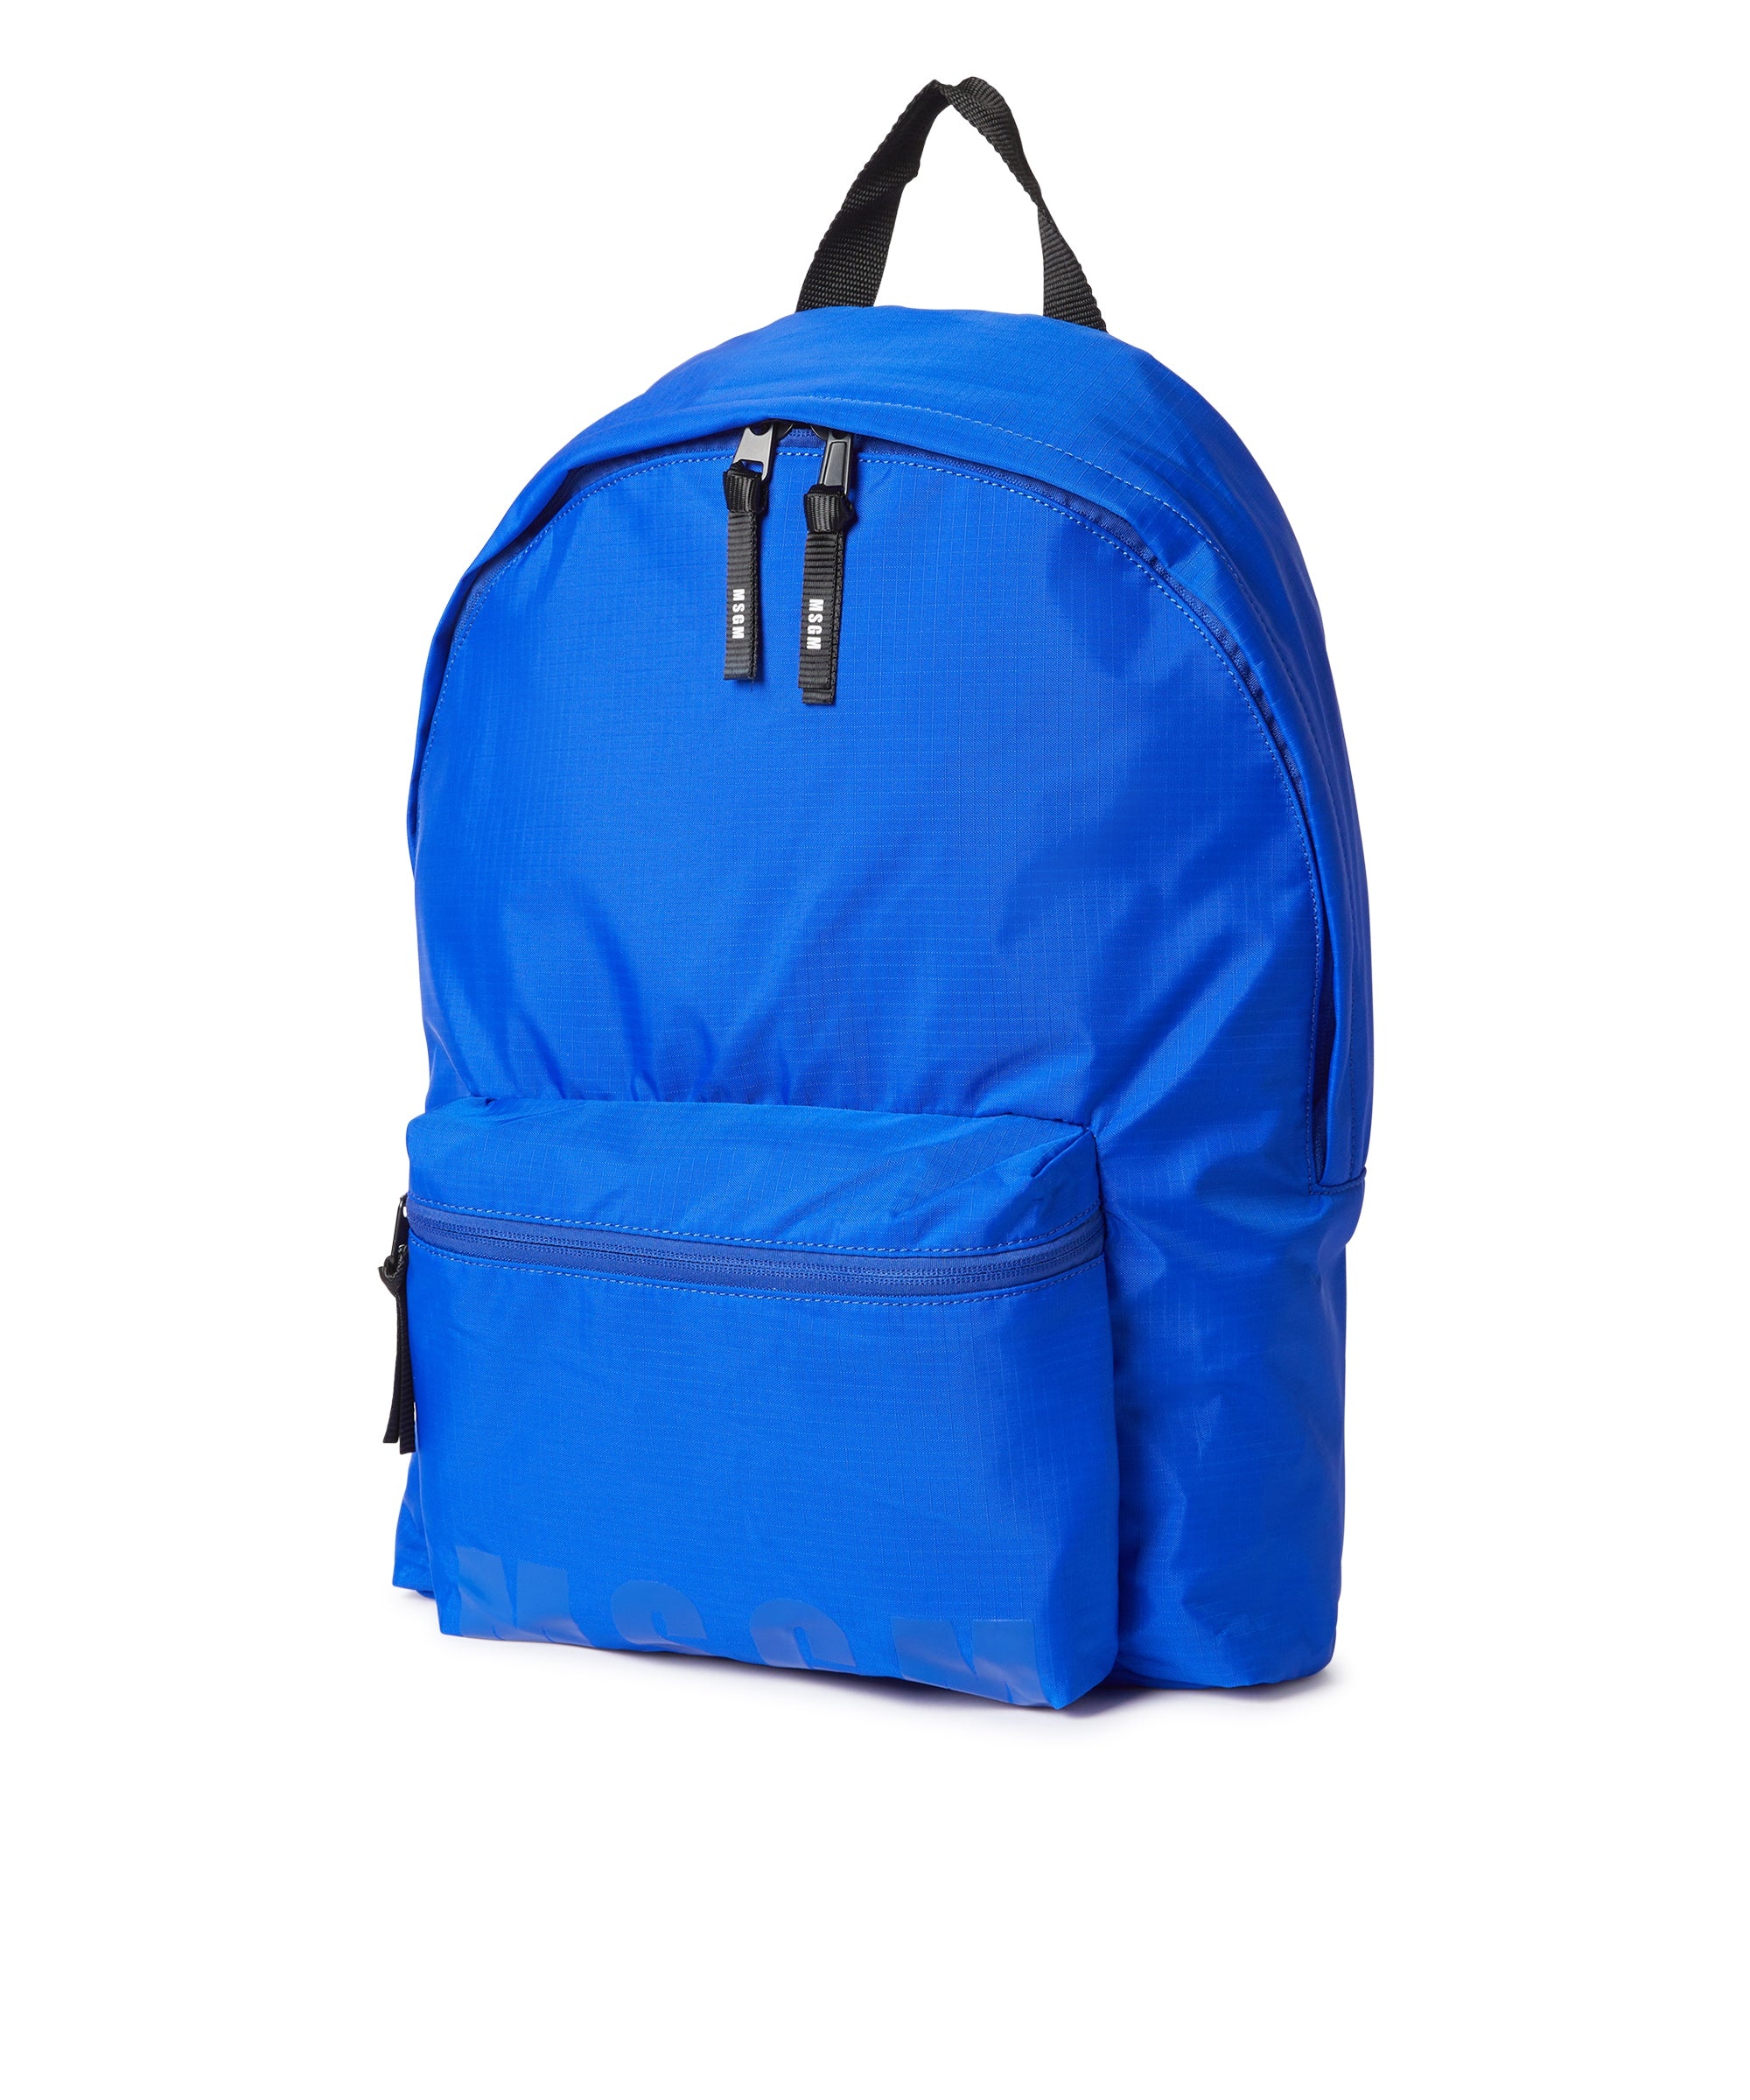 "Signature Iconic Nylon" backpack - 3